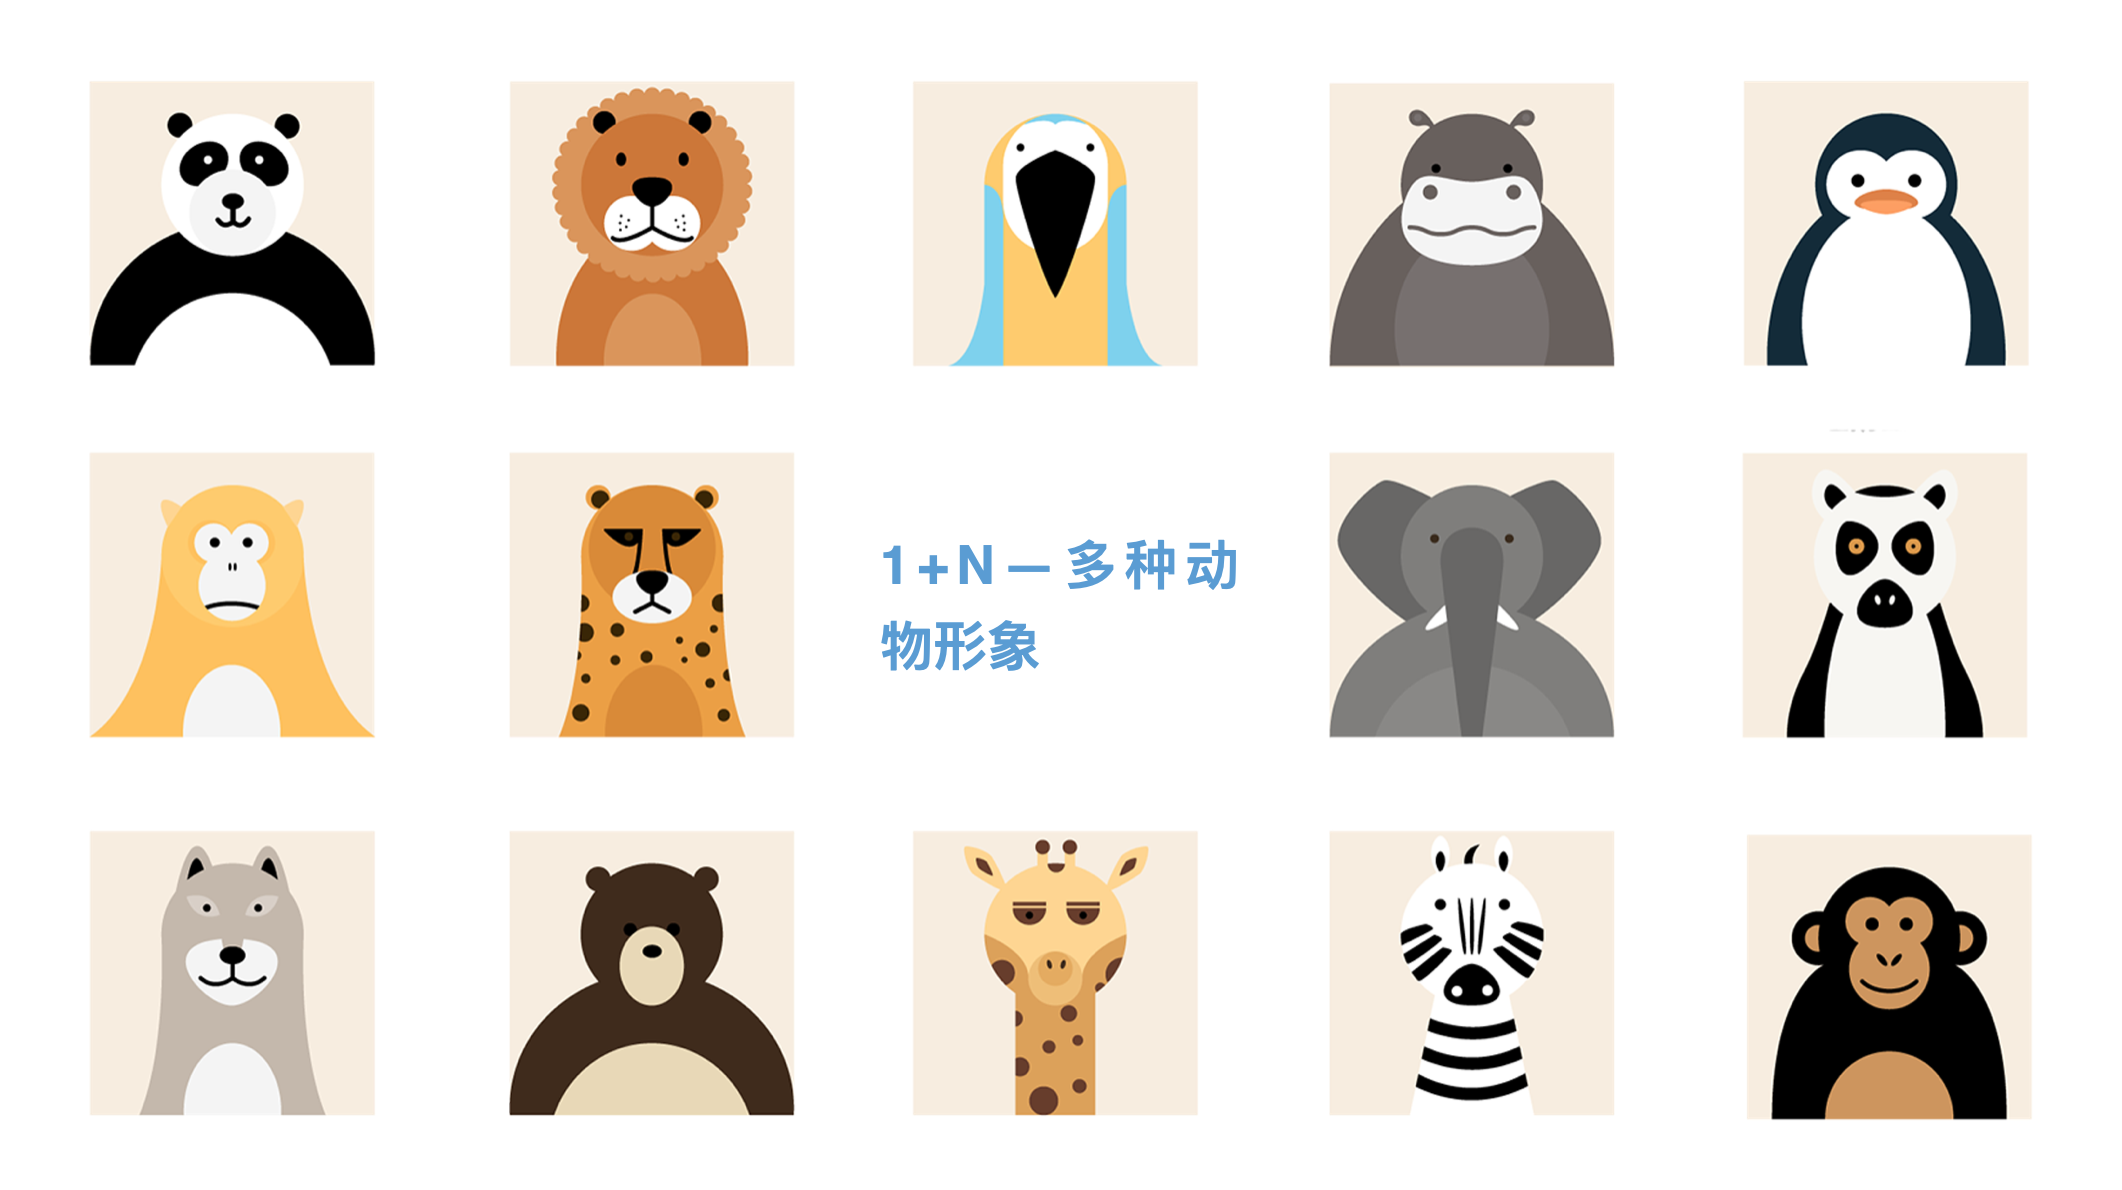 习惯星儿童品牌策划设计-儿童品牌设计-杭州达岸品牌策划设计公司